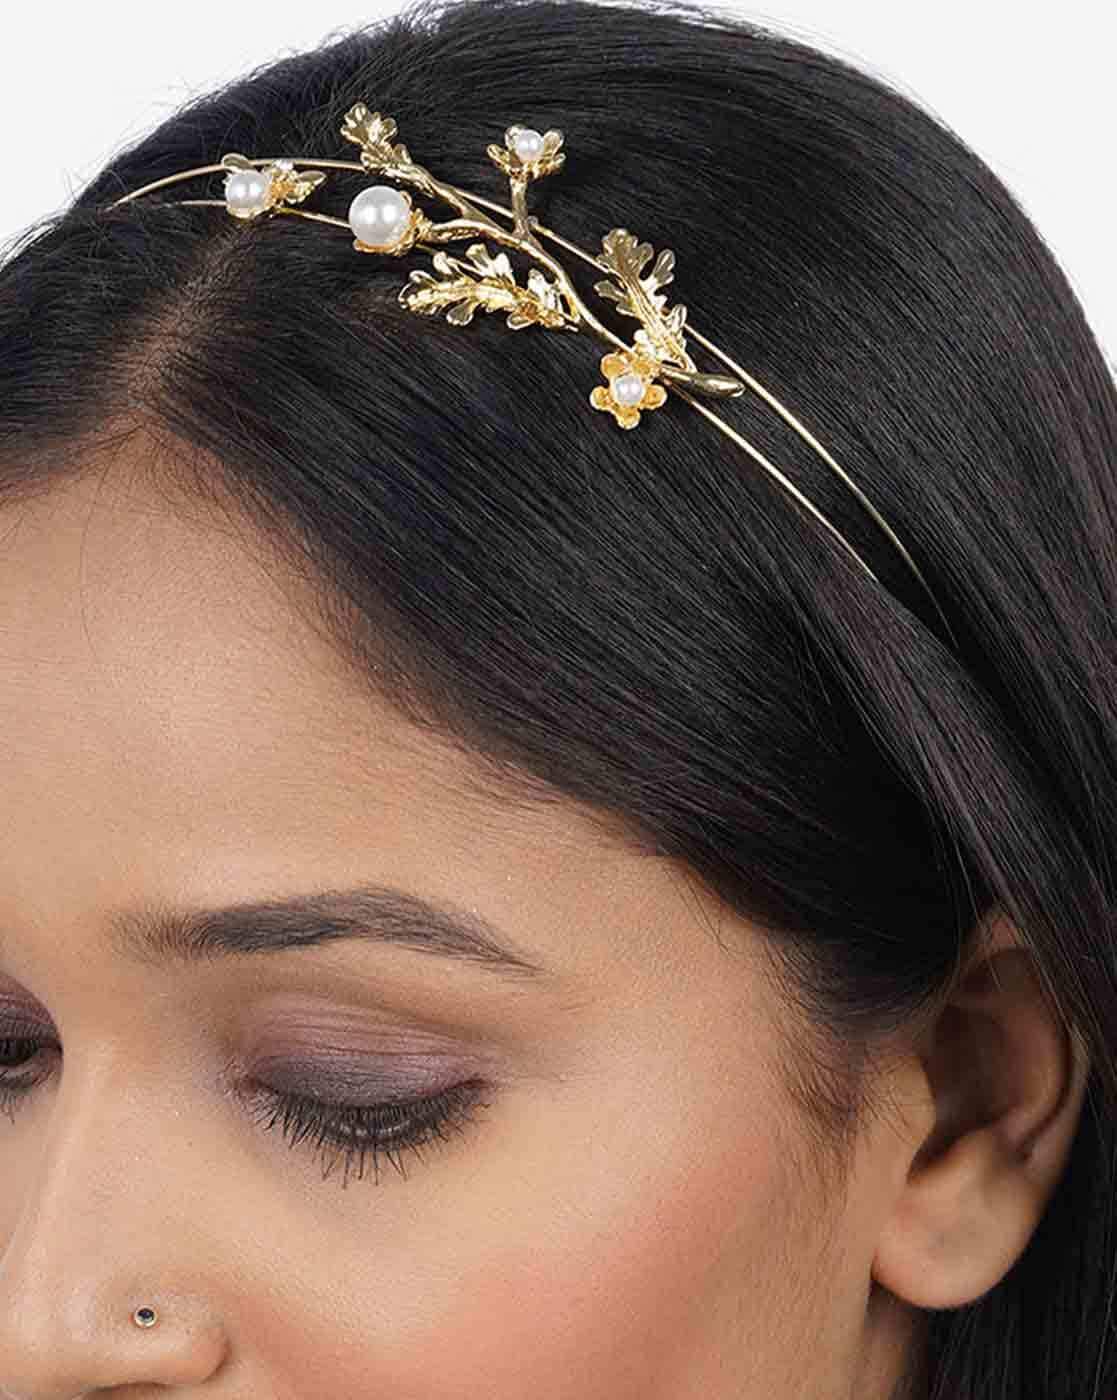 Buy Green Flower Hairband for Girls Online